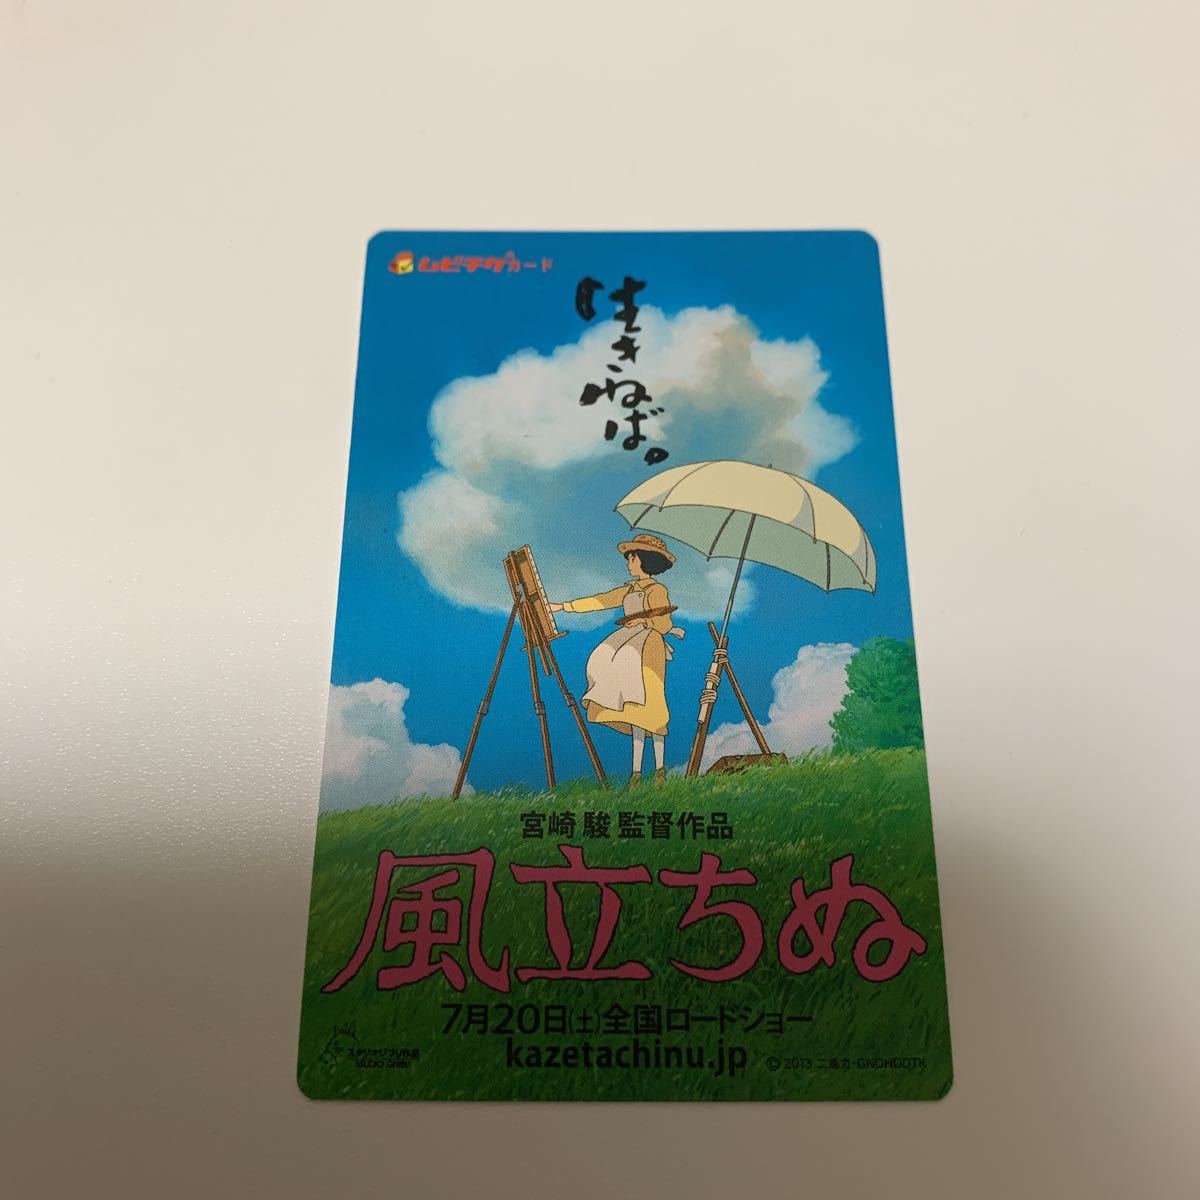 映画 風立ちぬ 使用済ムビチケ 宮崎駿監督 スタジオジブリ 使用済みムビチケカード